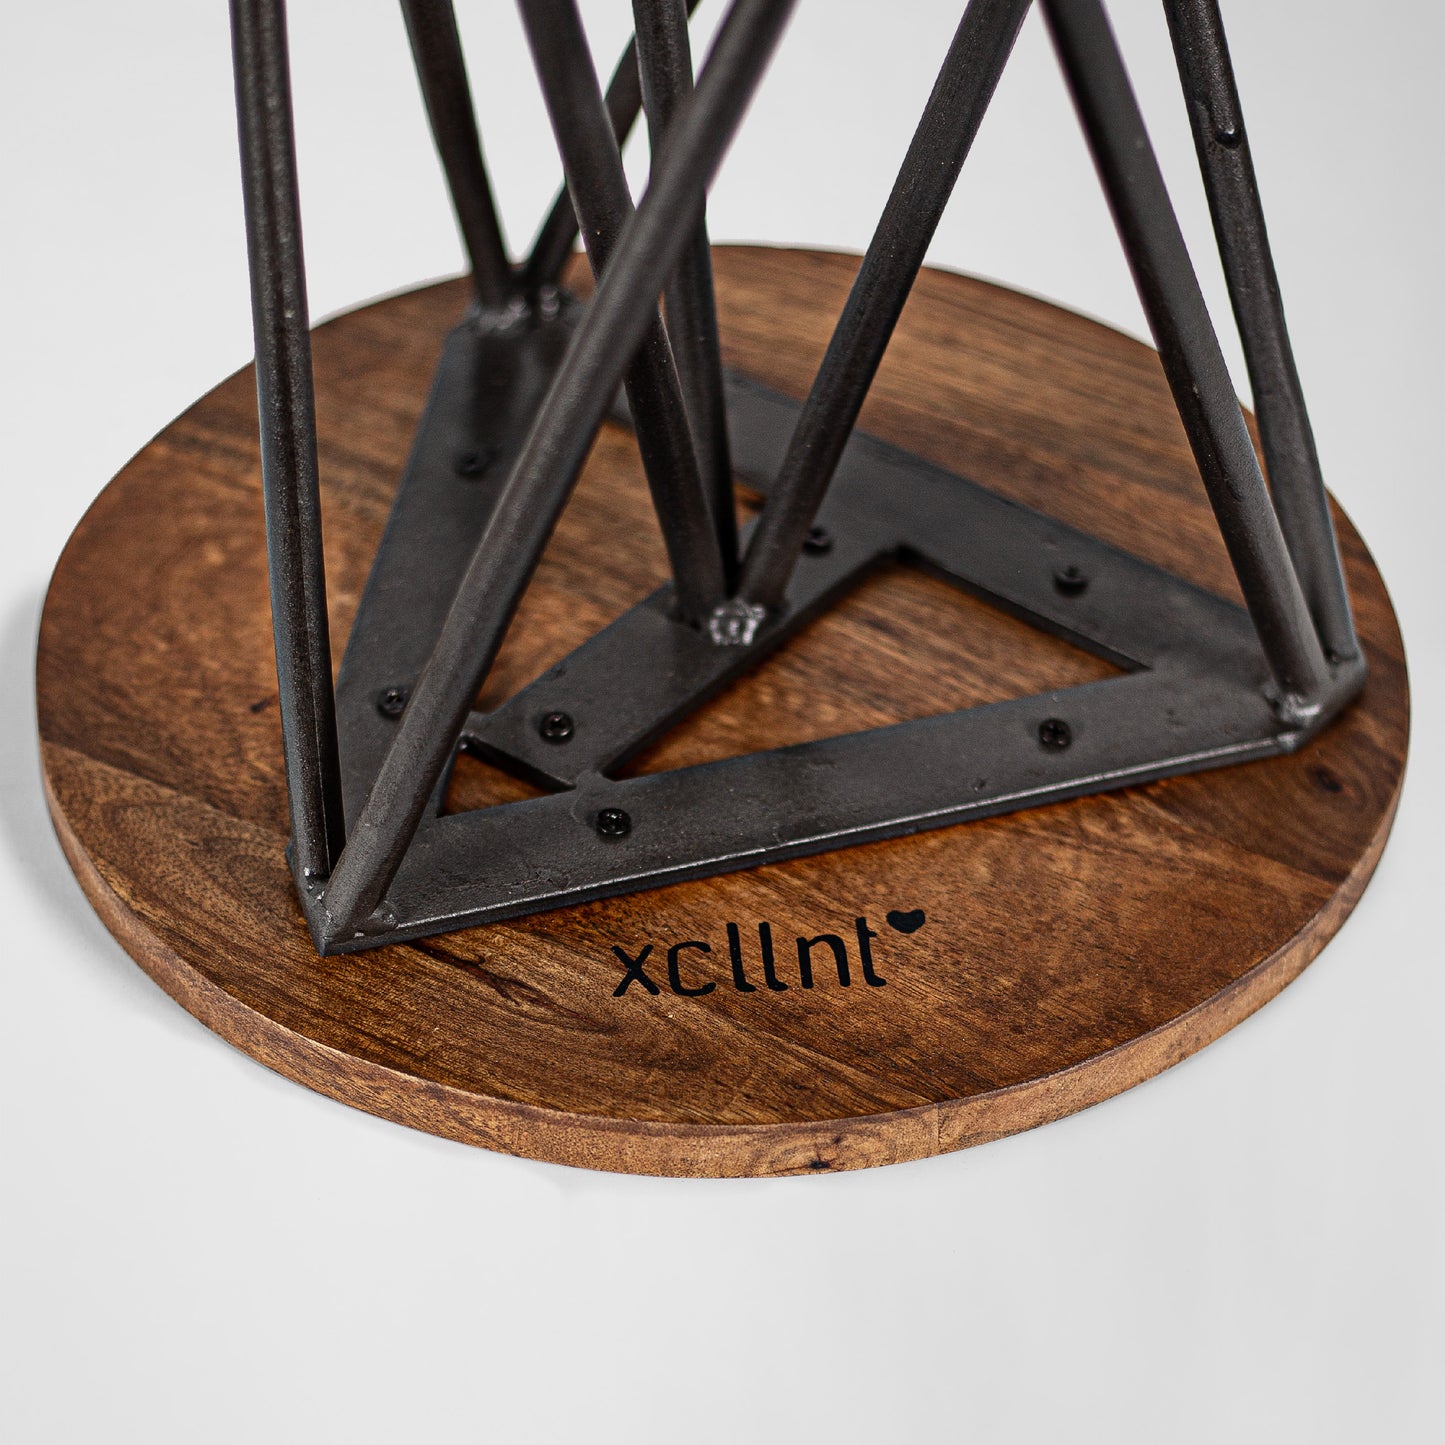 Graceful Grace – Handmade Industrie-Design Hocker aus Metall mit Holzsitz in schwarz